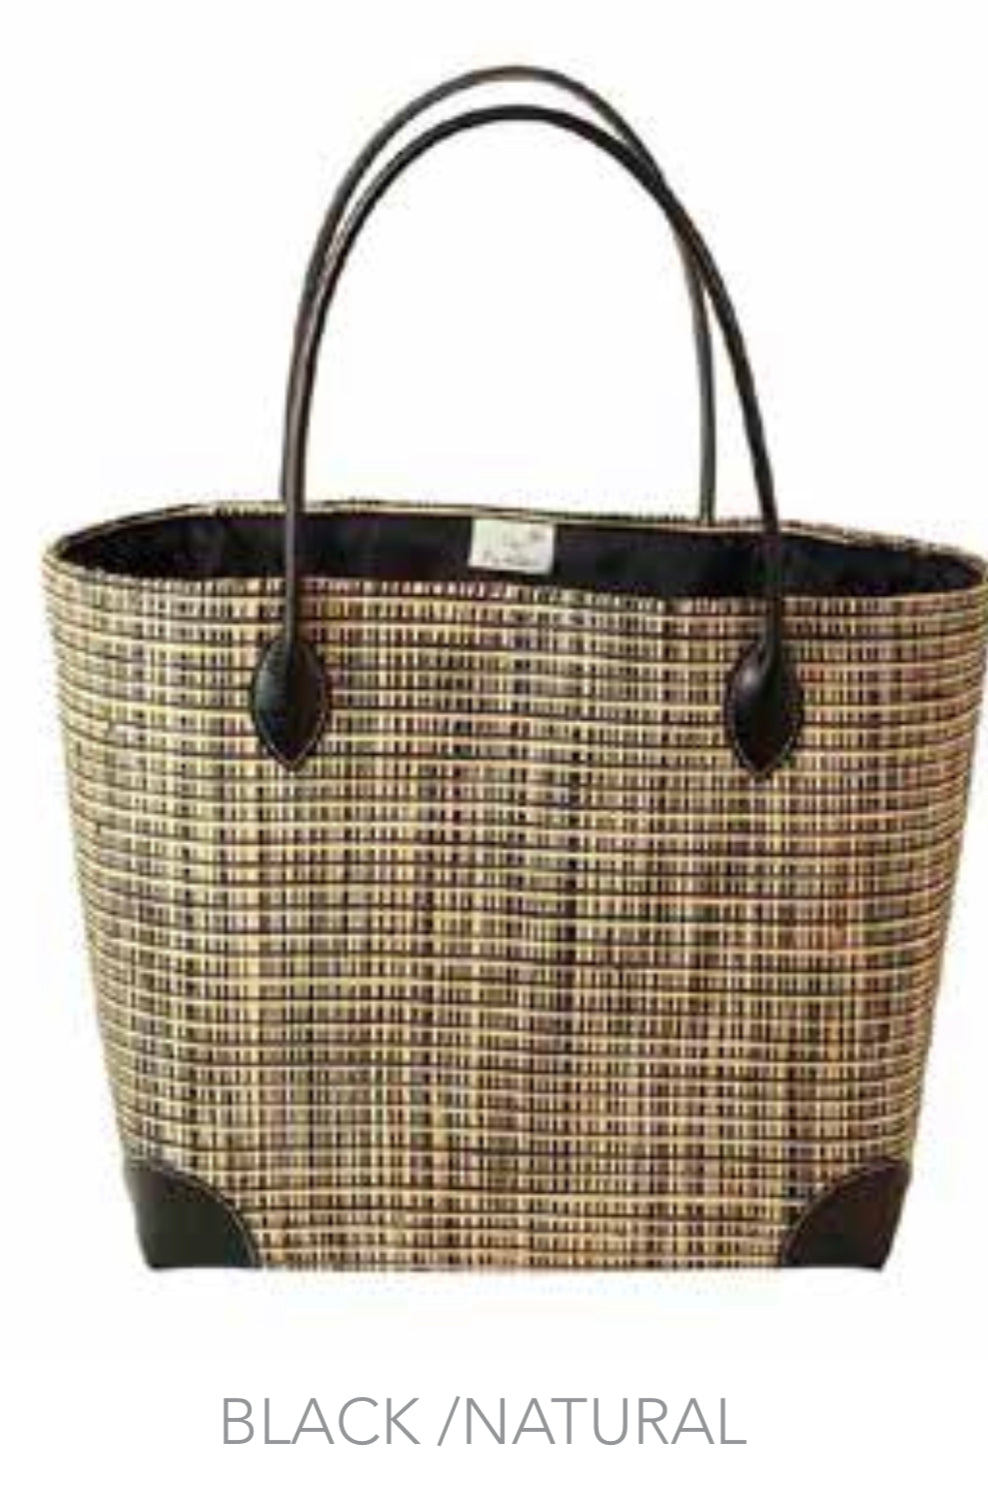 sabrina leather handle woven basket bag in black natural